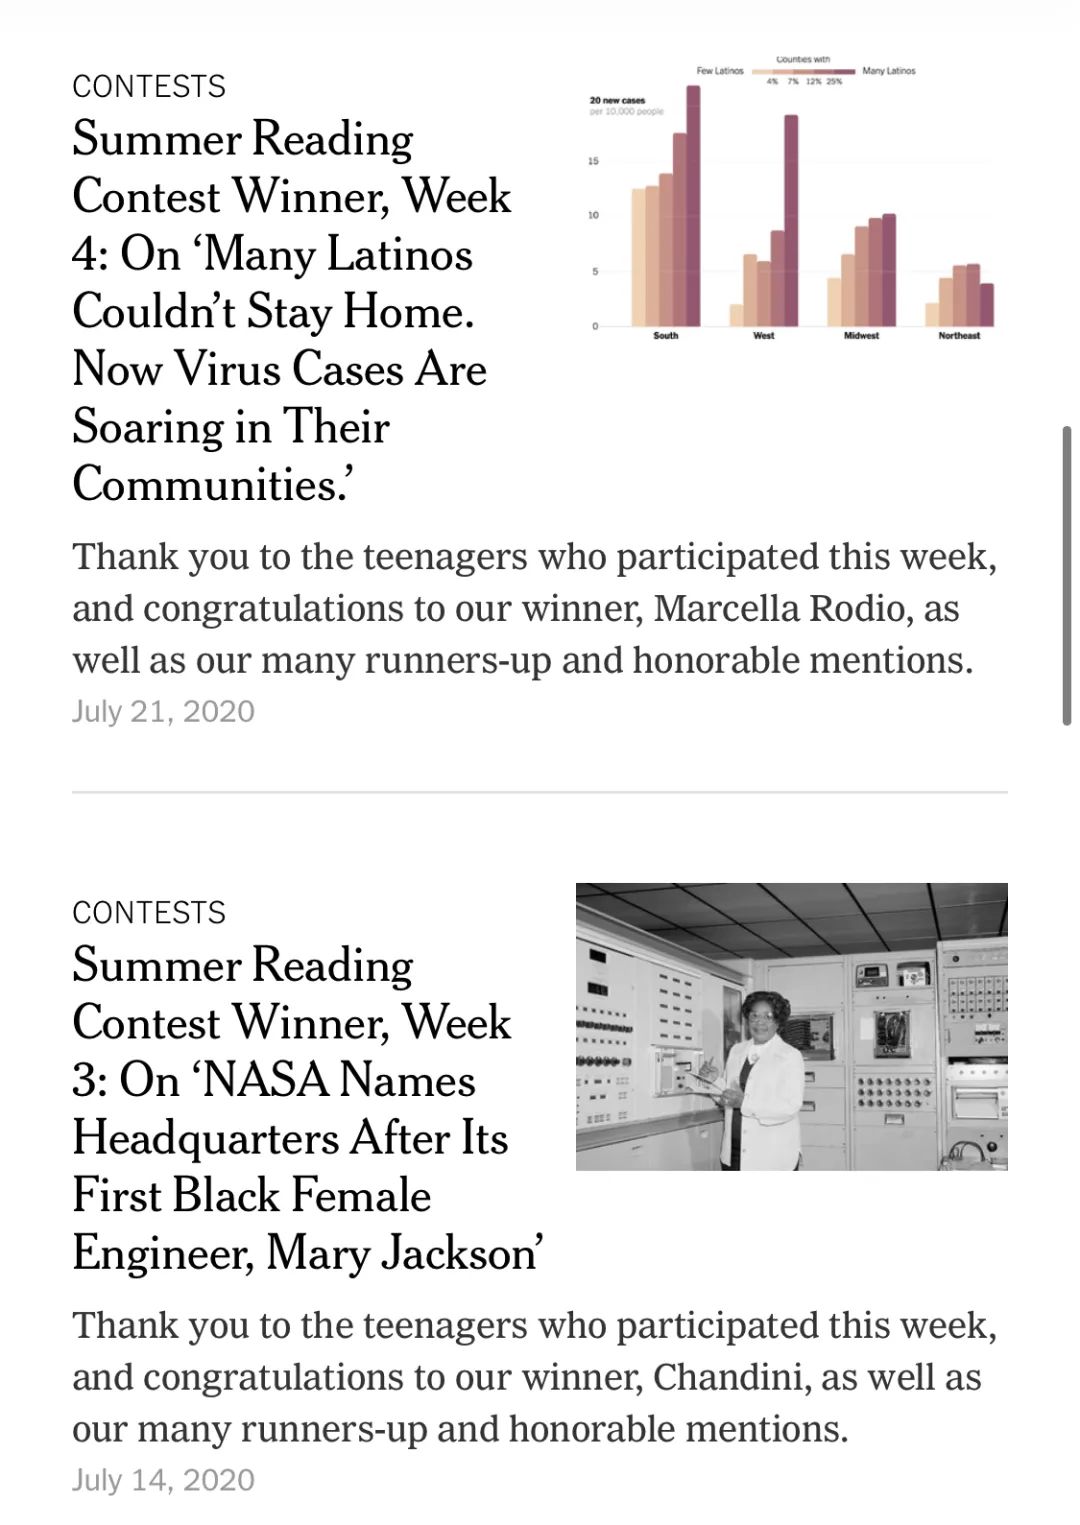 竞赛介绍 | 纽约时报夏季读写赛进入倒计时